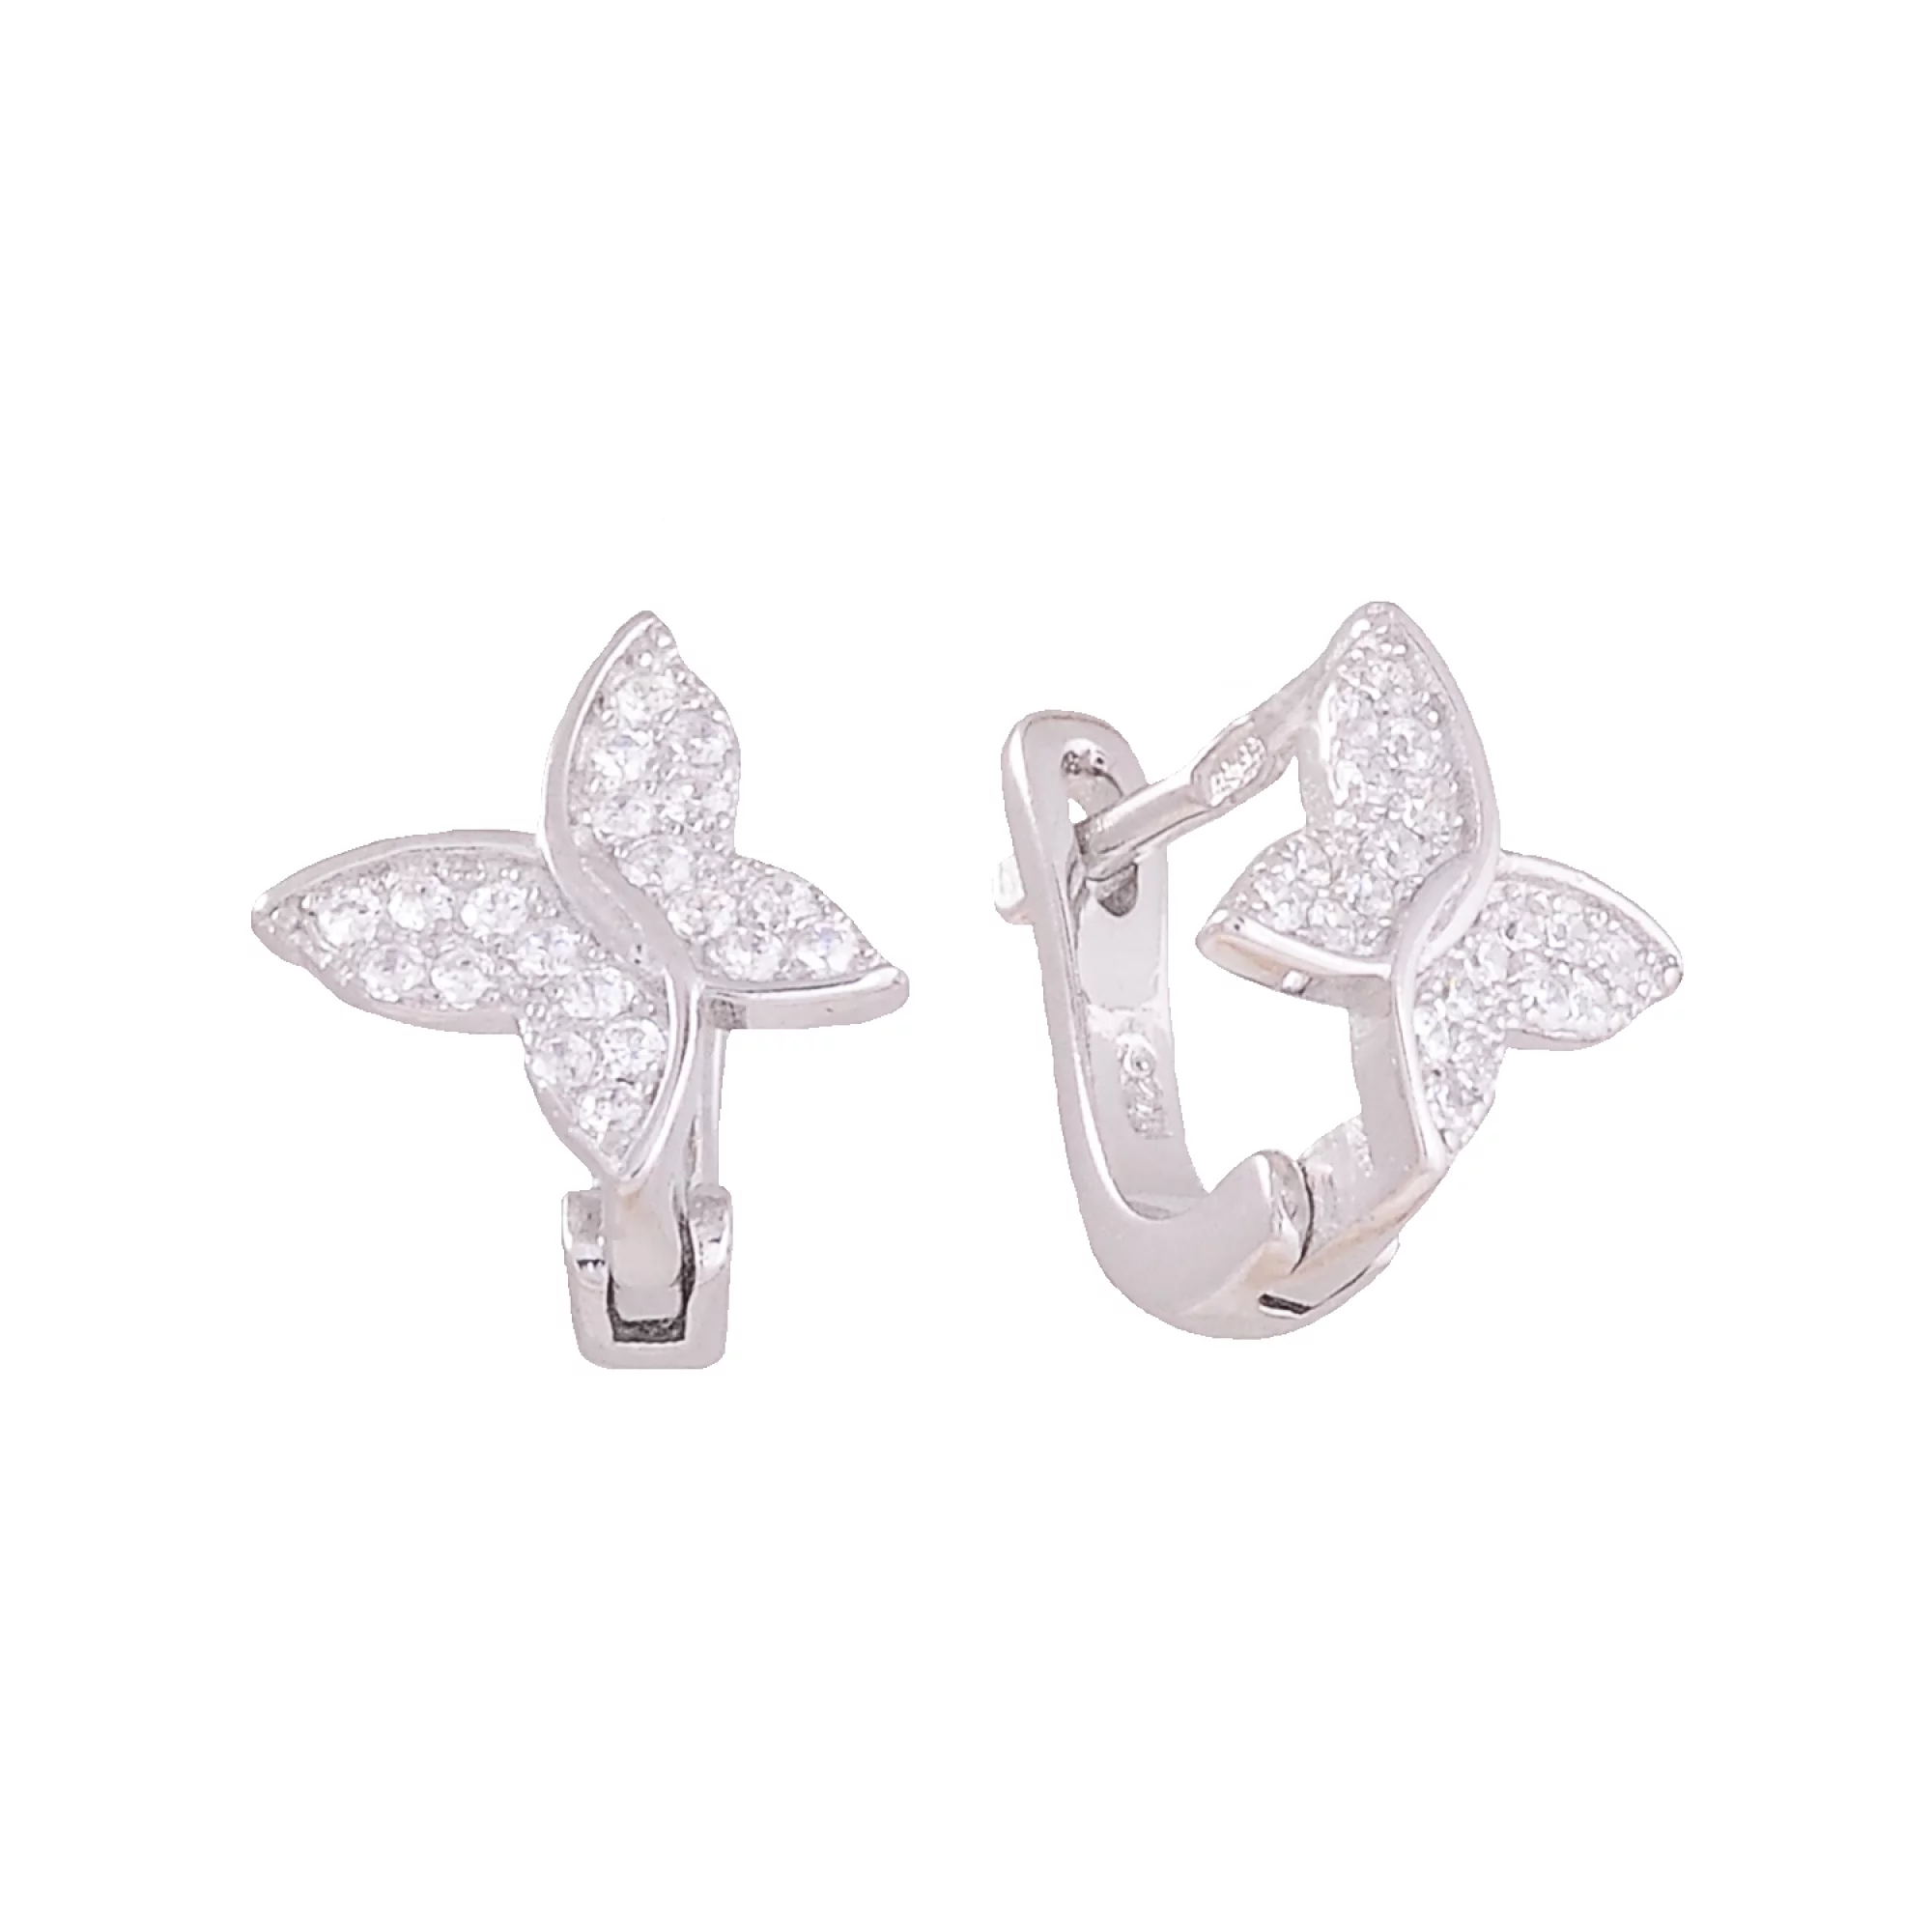 Срібні сережки "Метелик" з цирконієм - 375458 – зображення 1